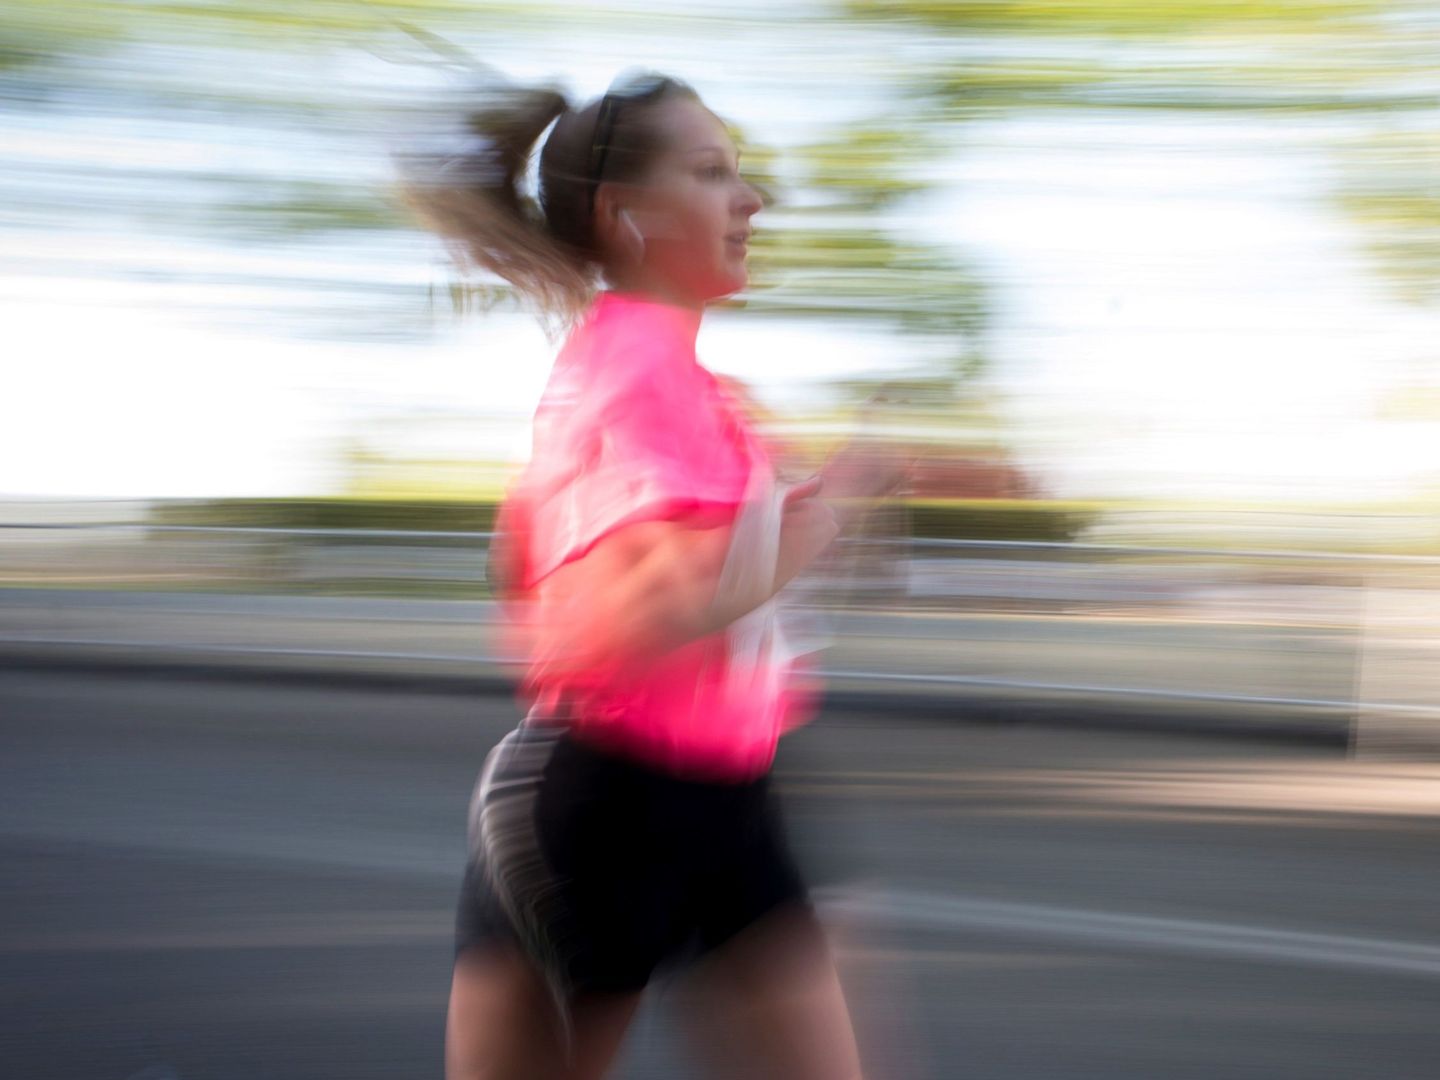 Muchas mujeres se han lanzado a correr en los últimos años en todo el mundo